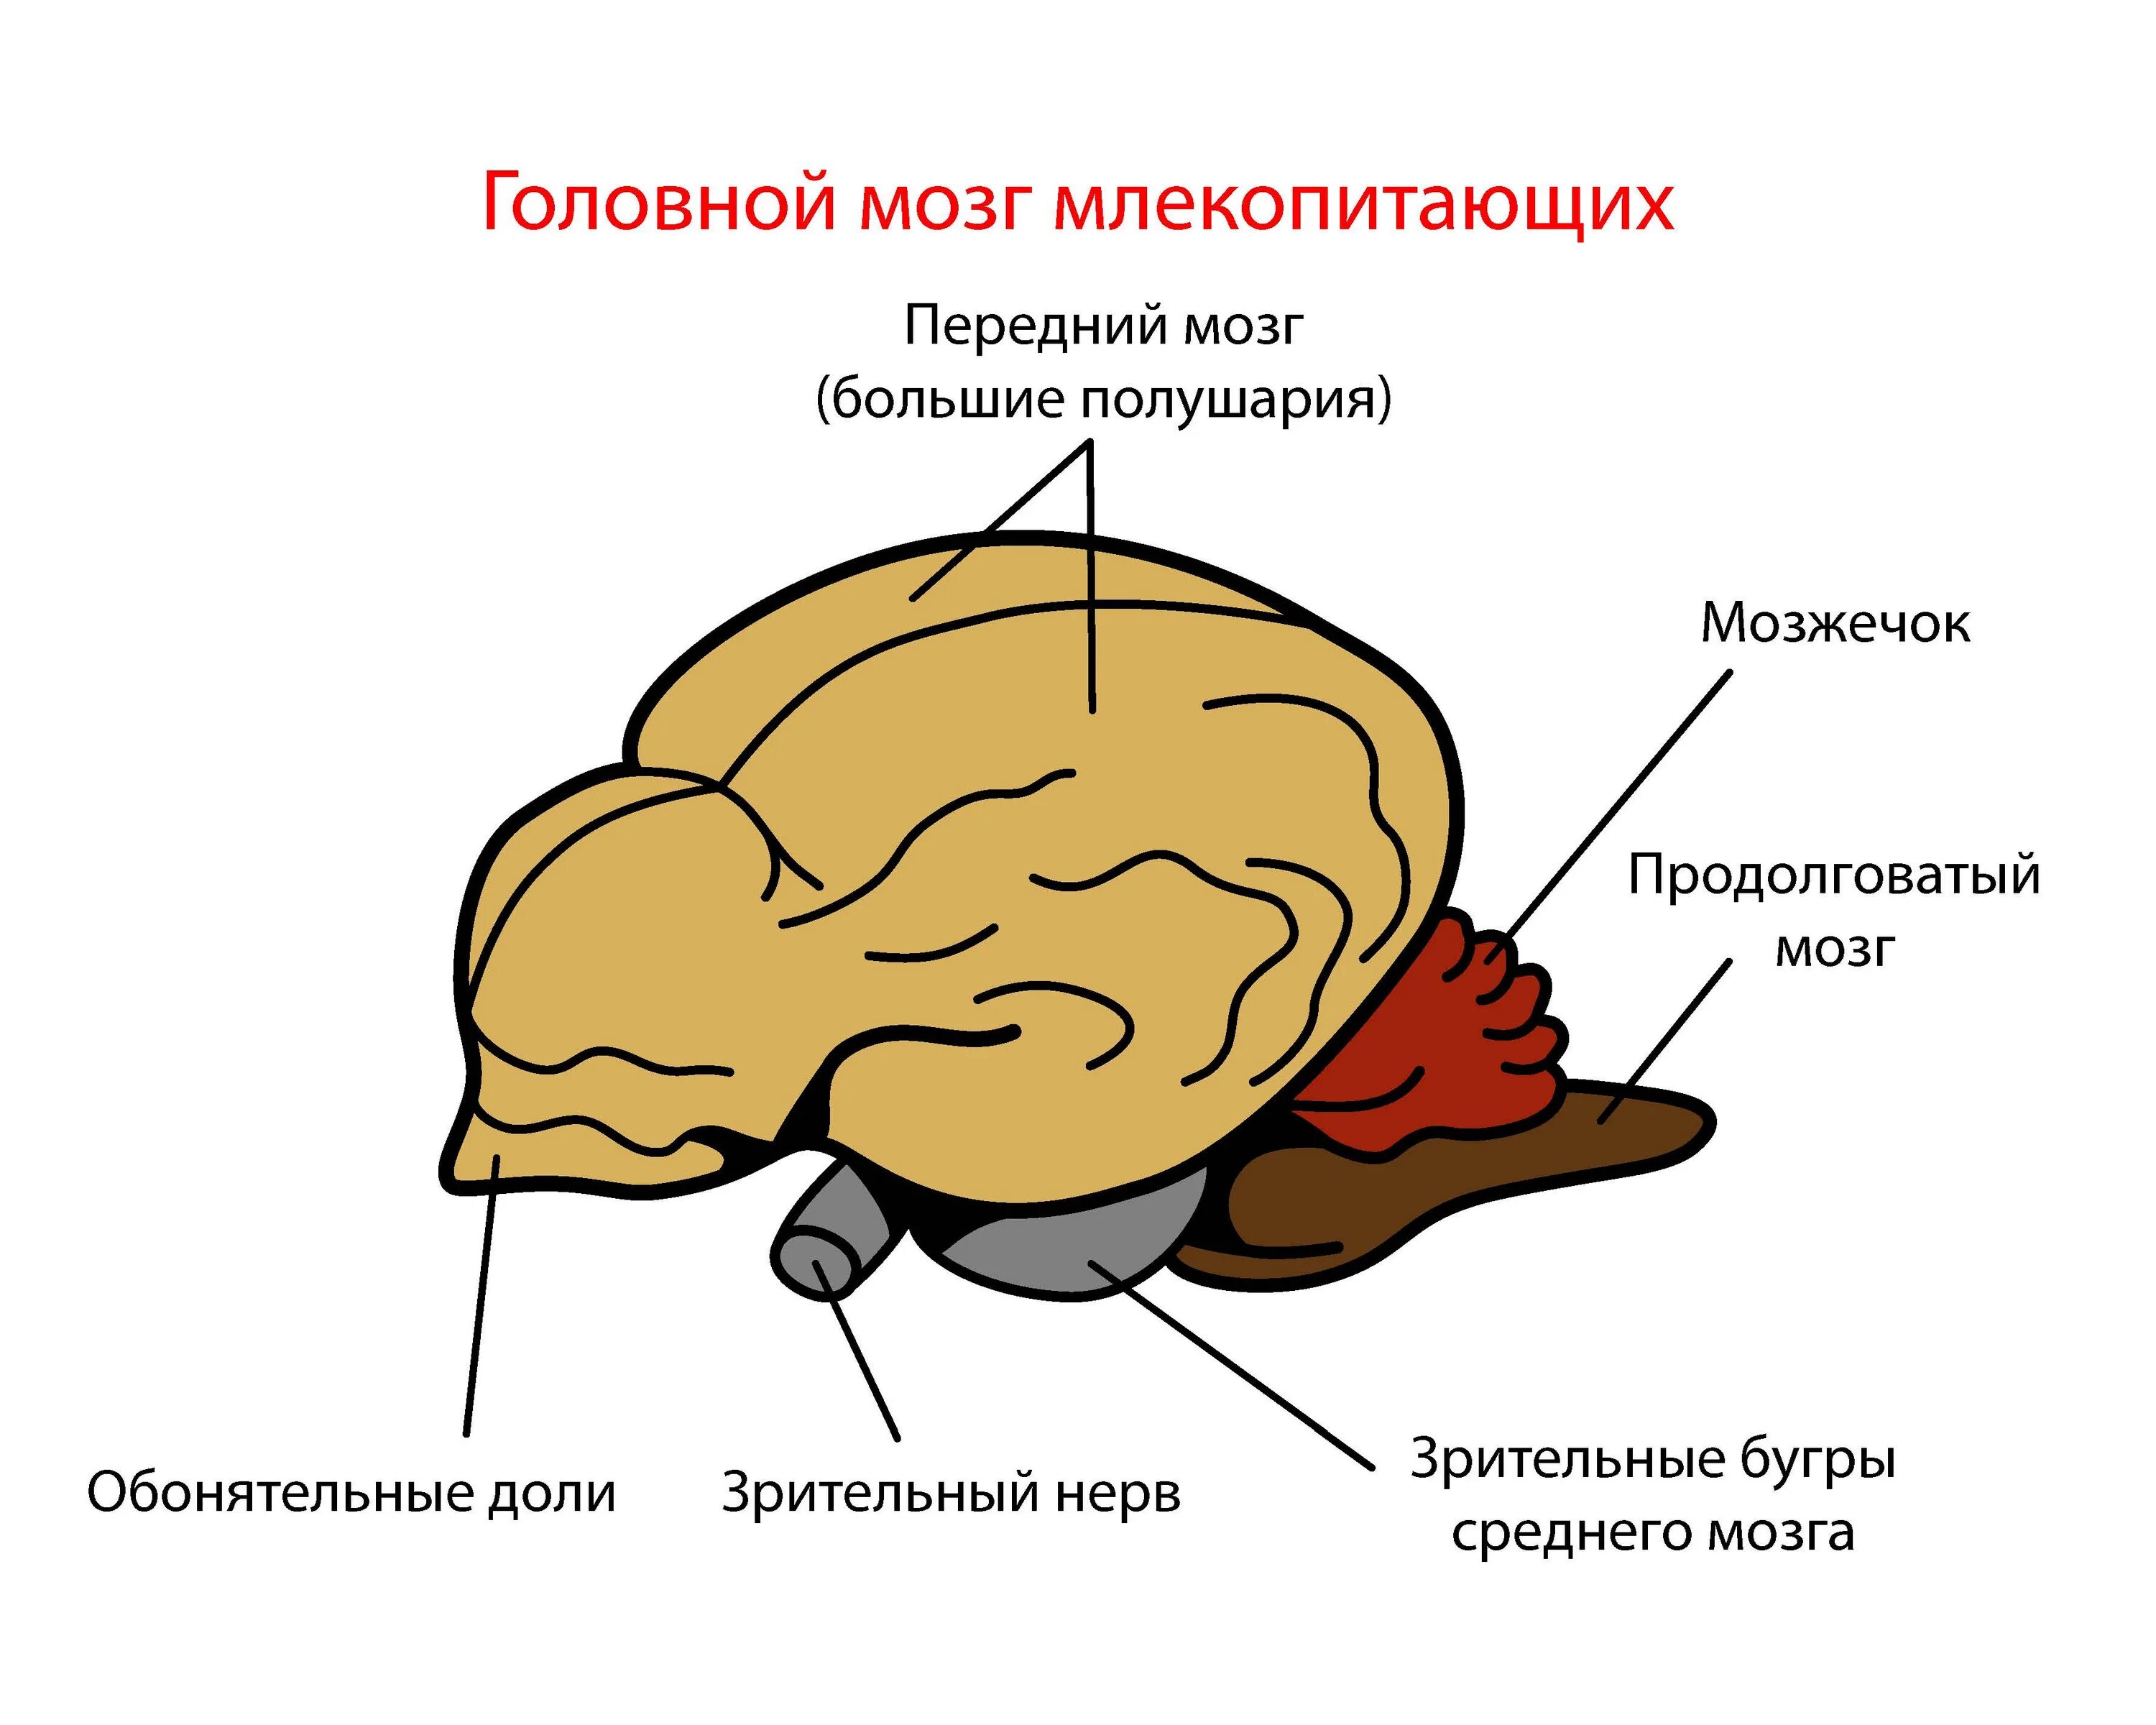 Головной мозг млекопитающих. Отделы головного мозга млекопитающих. Строение головного мозга млекопитающих. Мозг млекопитающего рисунок.